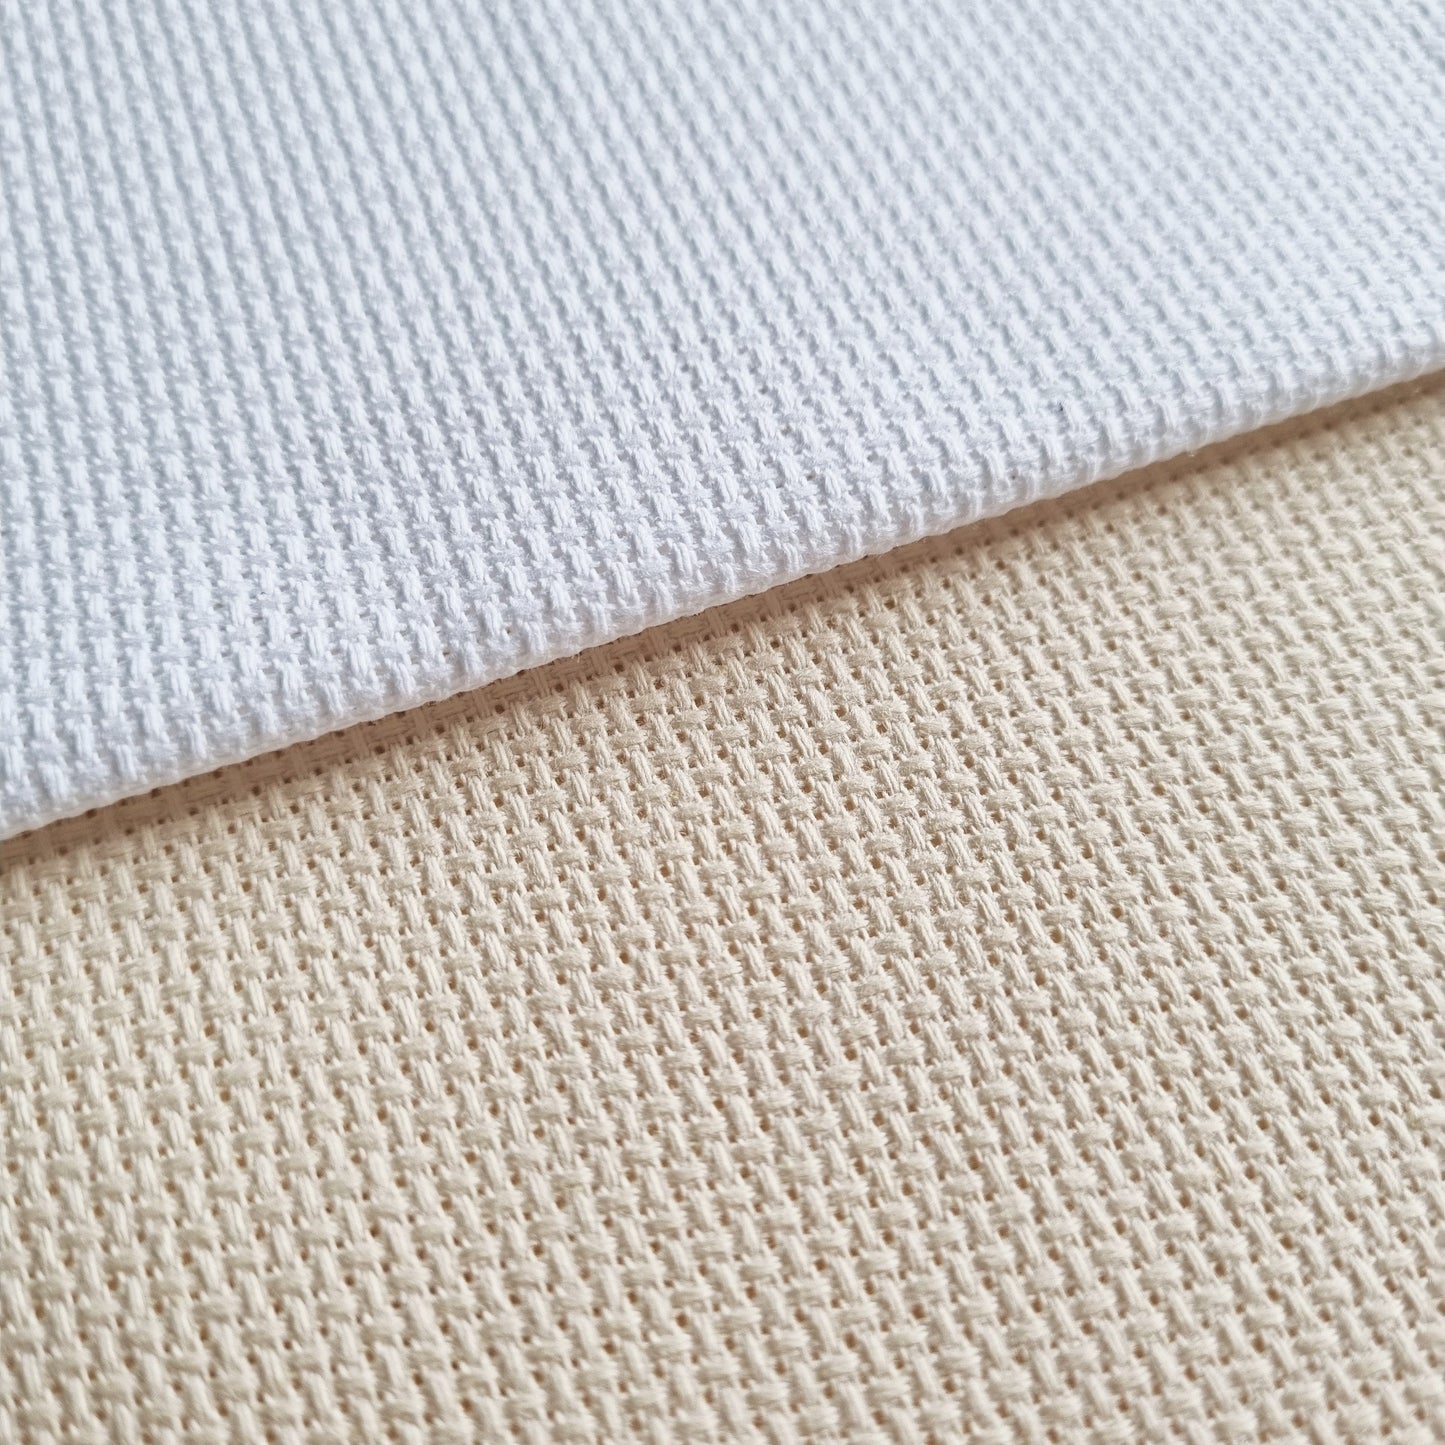 4 Pieces of 14 Count White or Cream Aida Fabric 20 x 21.5 Inches / 50cm x 55cm